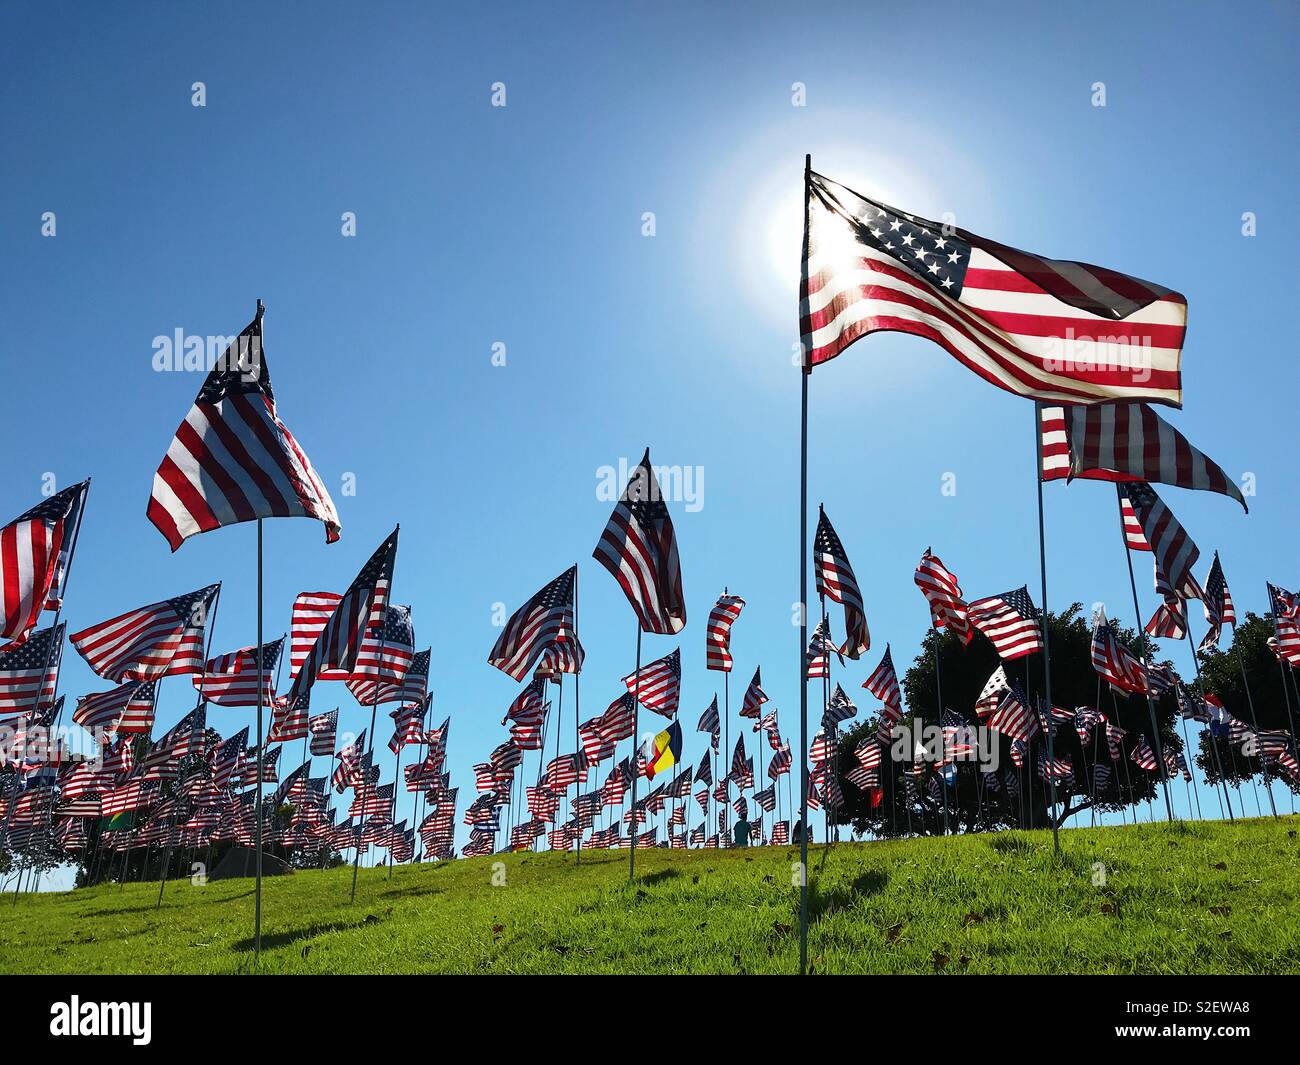 Wellen von Speicher. Wellen der Flaggen Display in Alumni Park der Pepperdine University in Malibu, CA, USA. Flaggen sind hier in Erinnerung an den 11. September 2001 Opfer des Anschlags angezeigt (ein Flag pro Leben verloren). 2017 Stockfoto